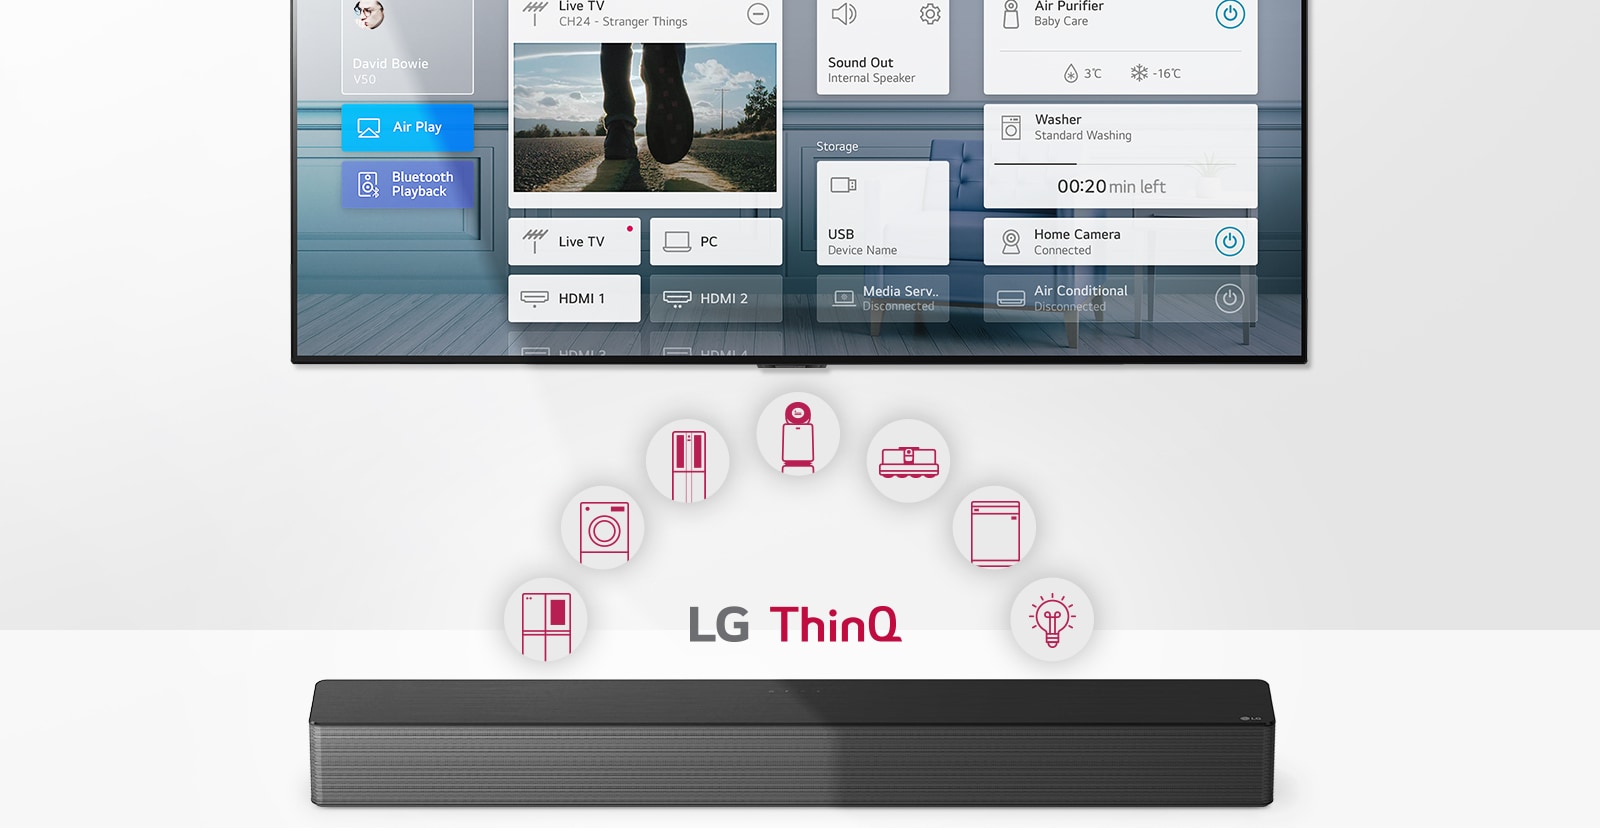 التلفزيون على الحائط.  يقع مكبر الصوت LG Soundbar أسفل التلفزيون.  يظهر شعار LG ThinQ وأيقونات الأجهزة بين التلفزيون ونظام الصوت LG Soundbar.